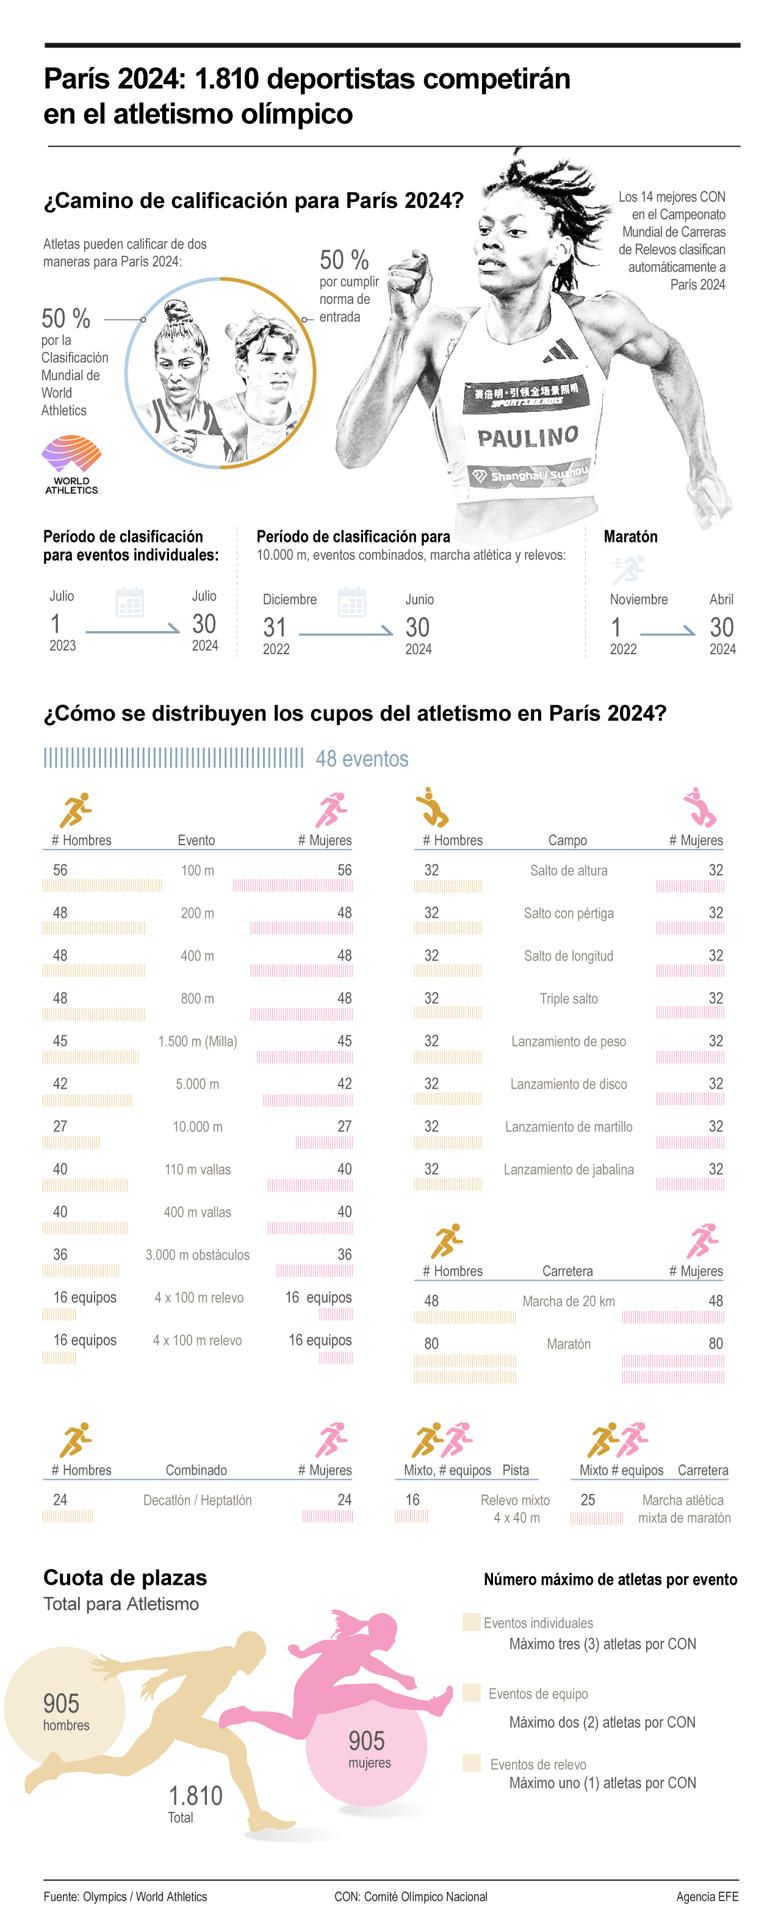 París 2024: 1,810 deportistas competirán en el atletismo olímpico 01 010524